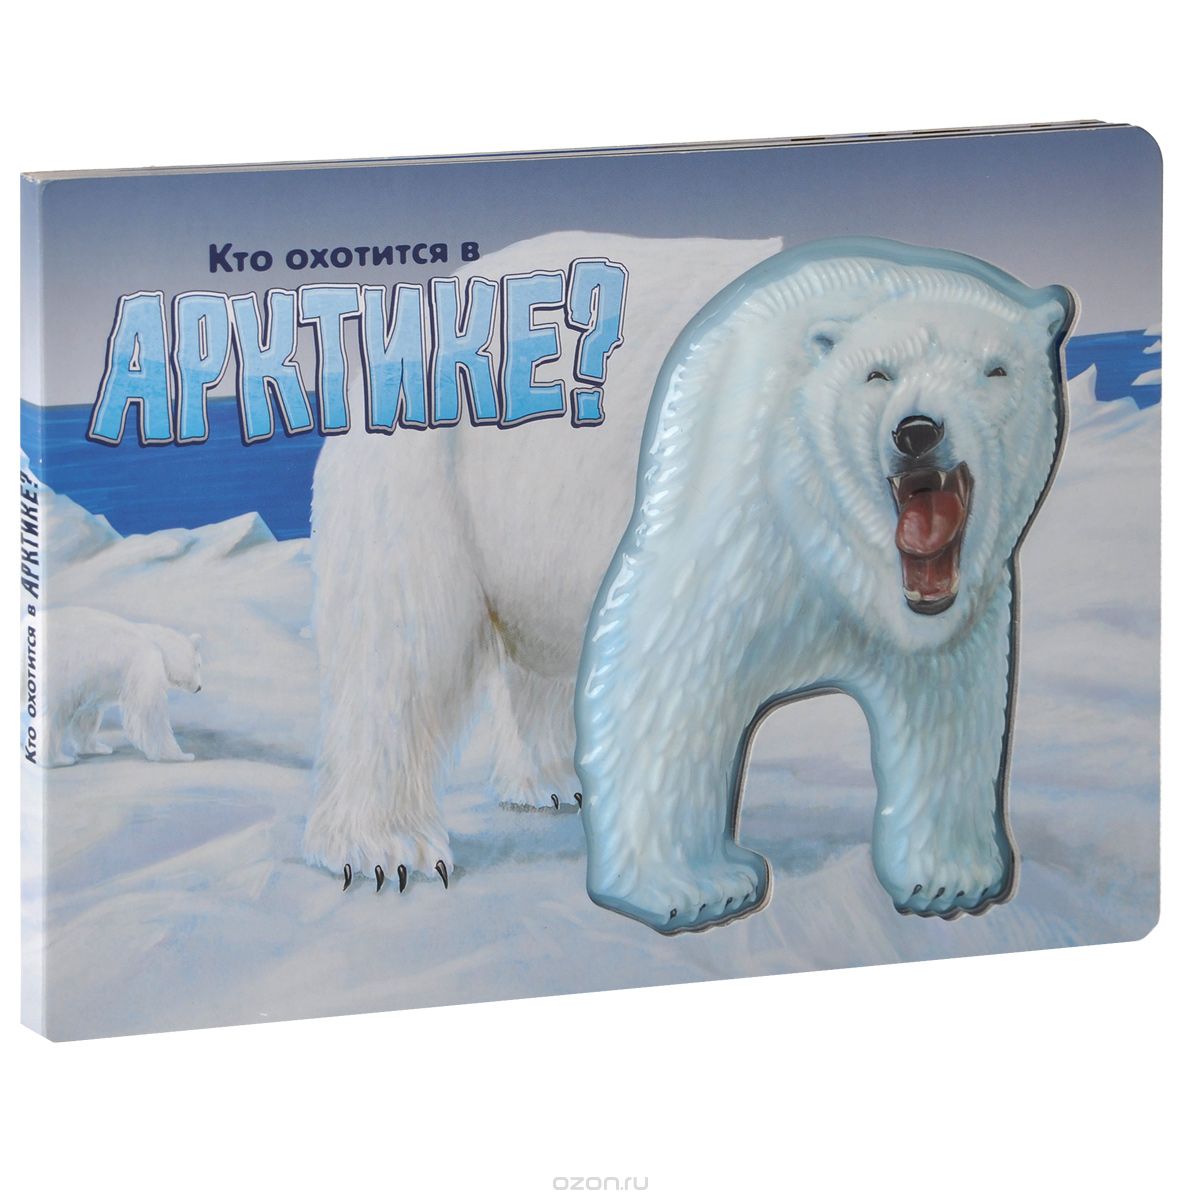 Скачать книгу "Кто охотится в Арктике?"